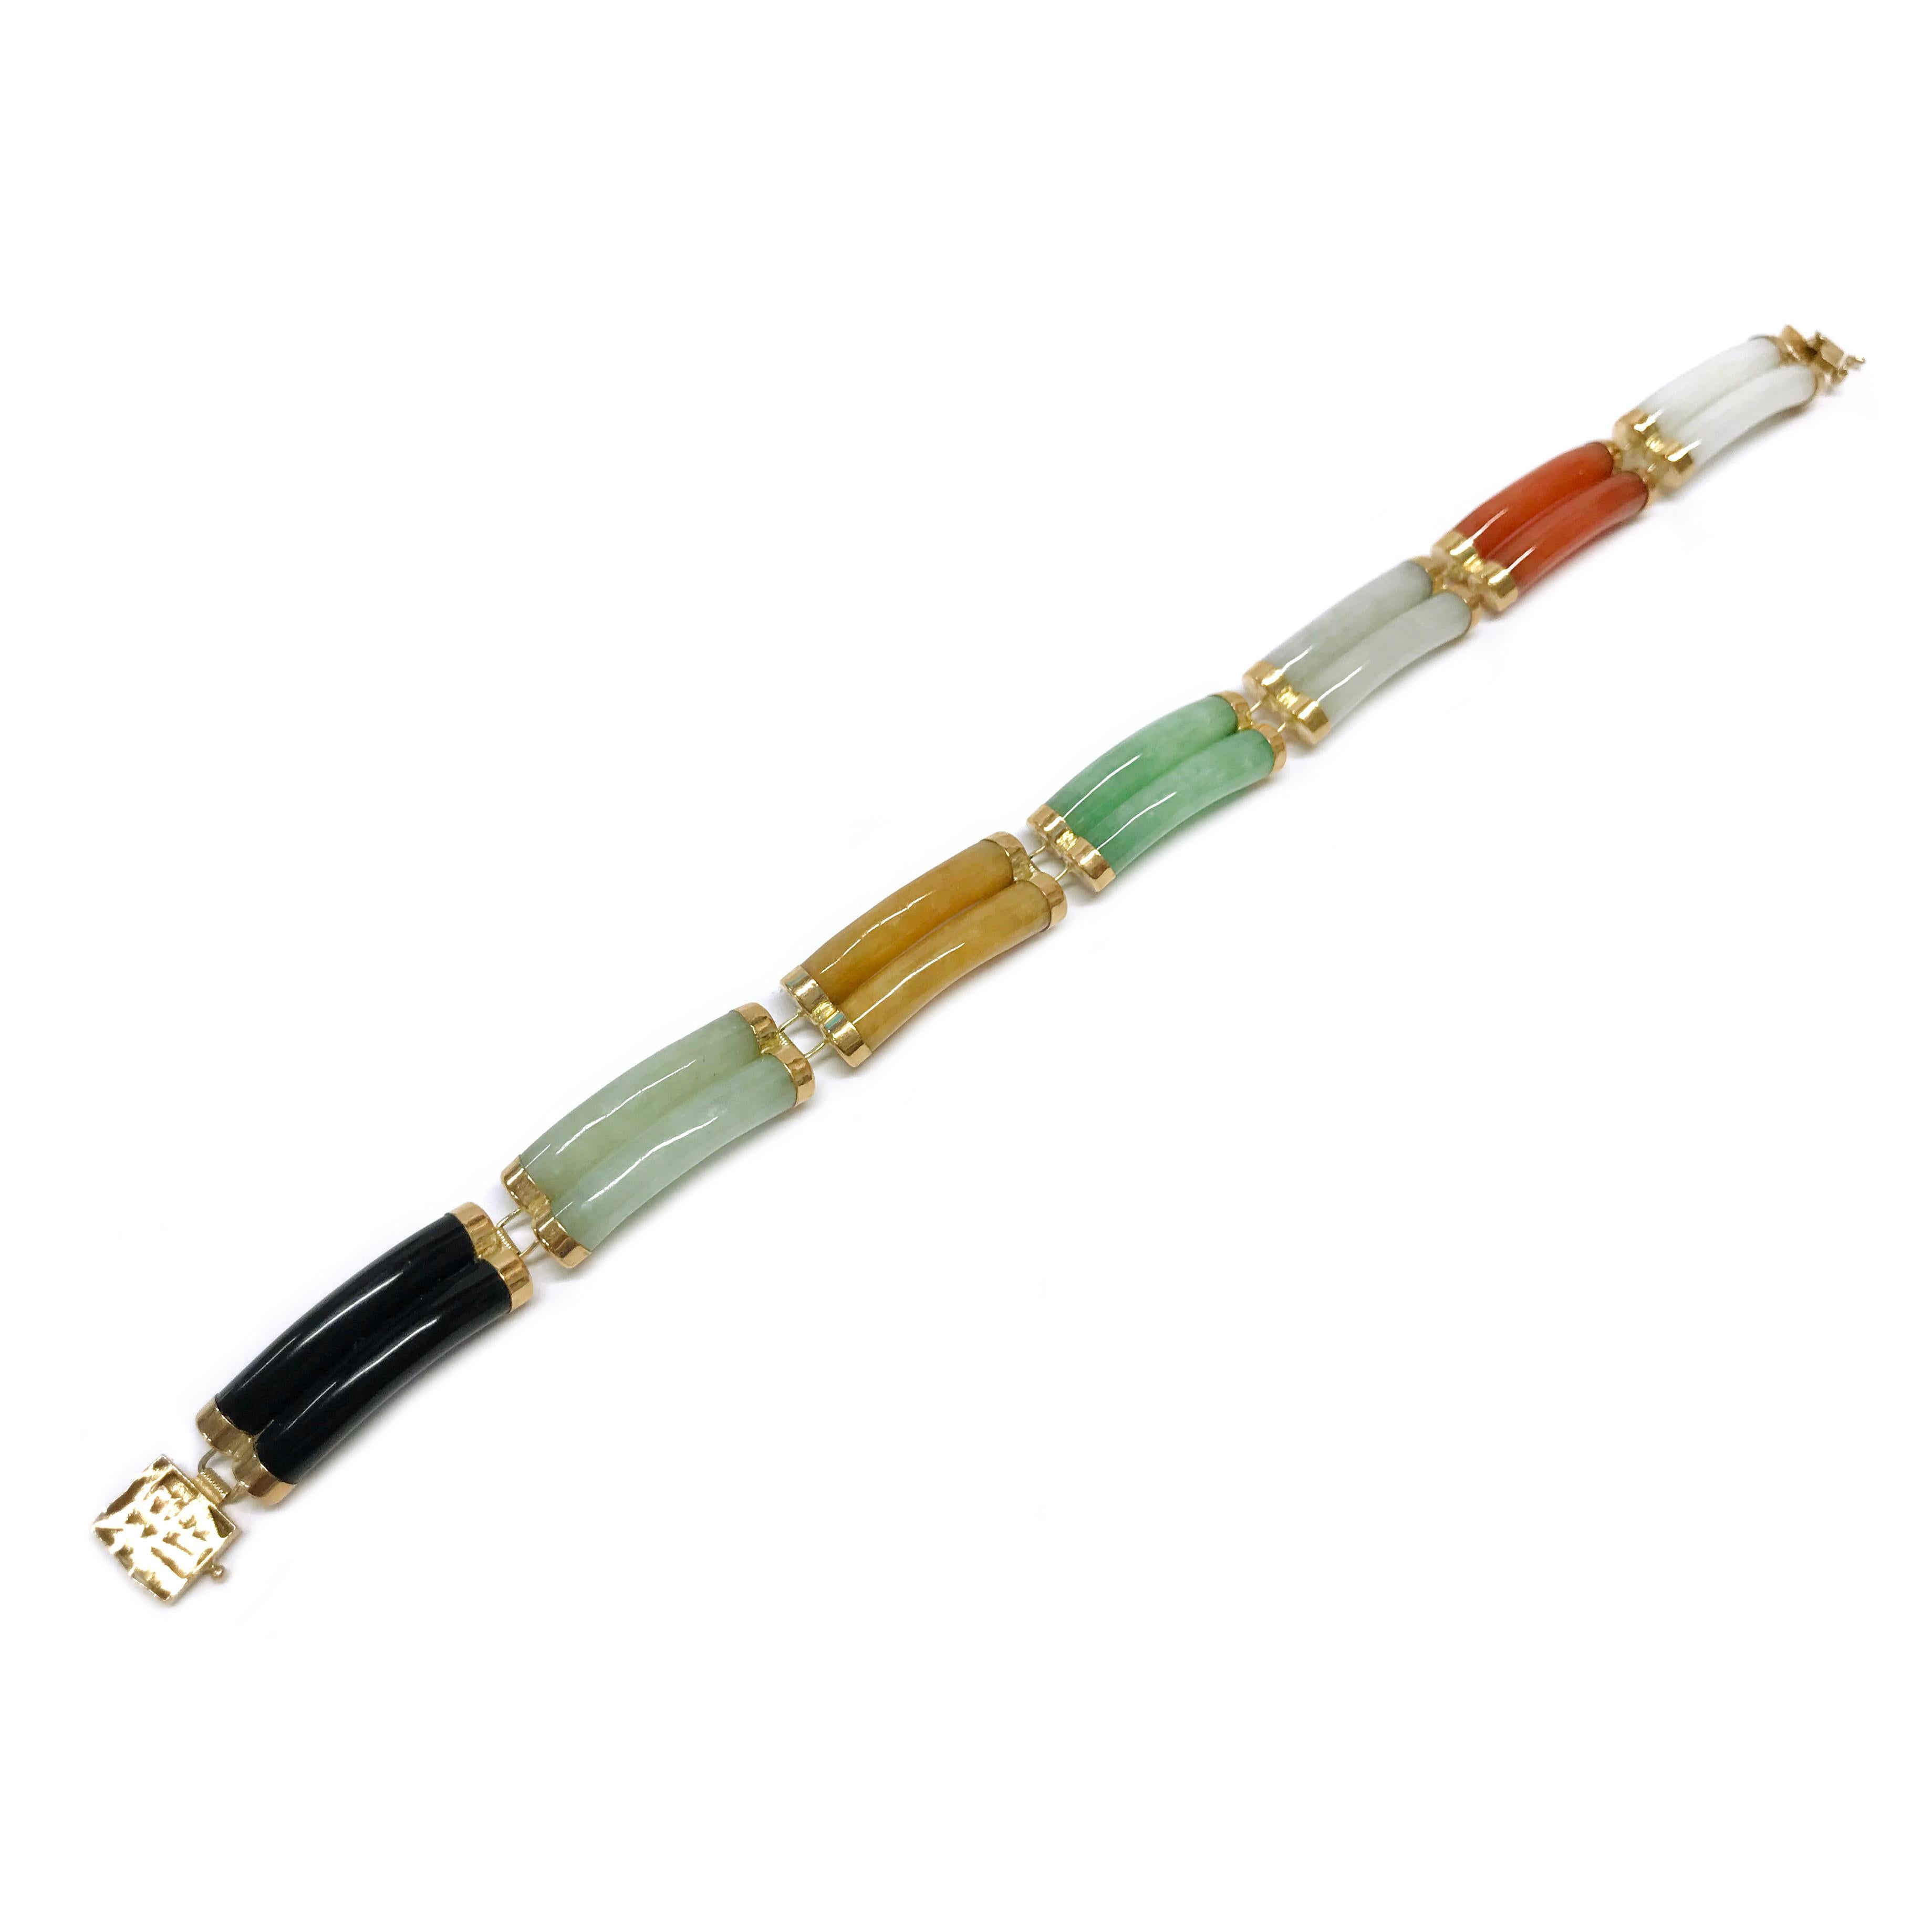 multi color jade bracelet